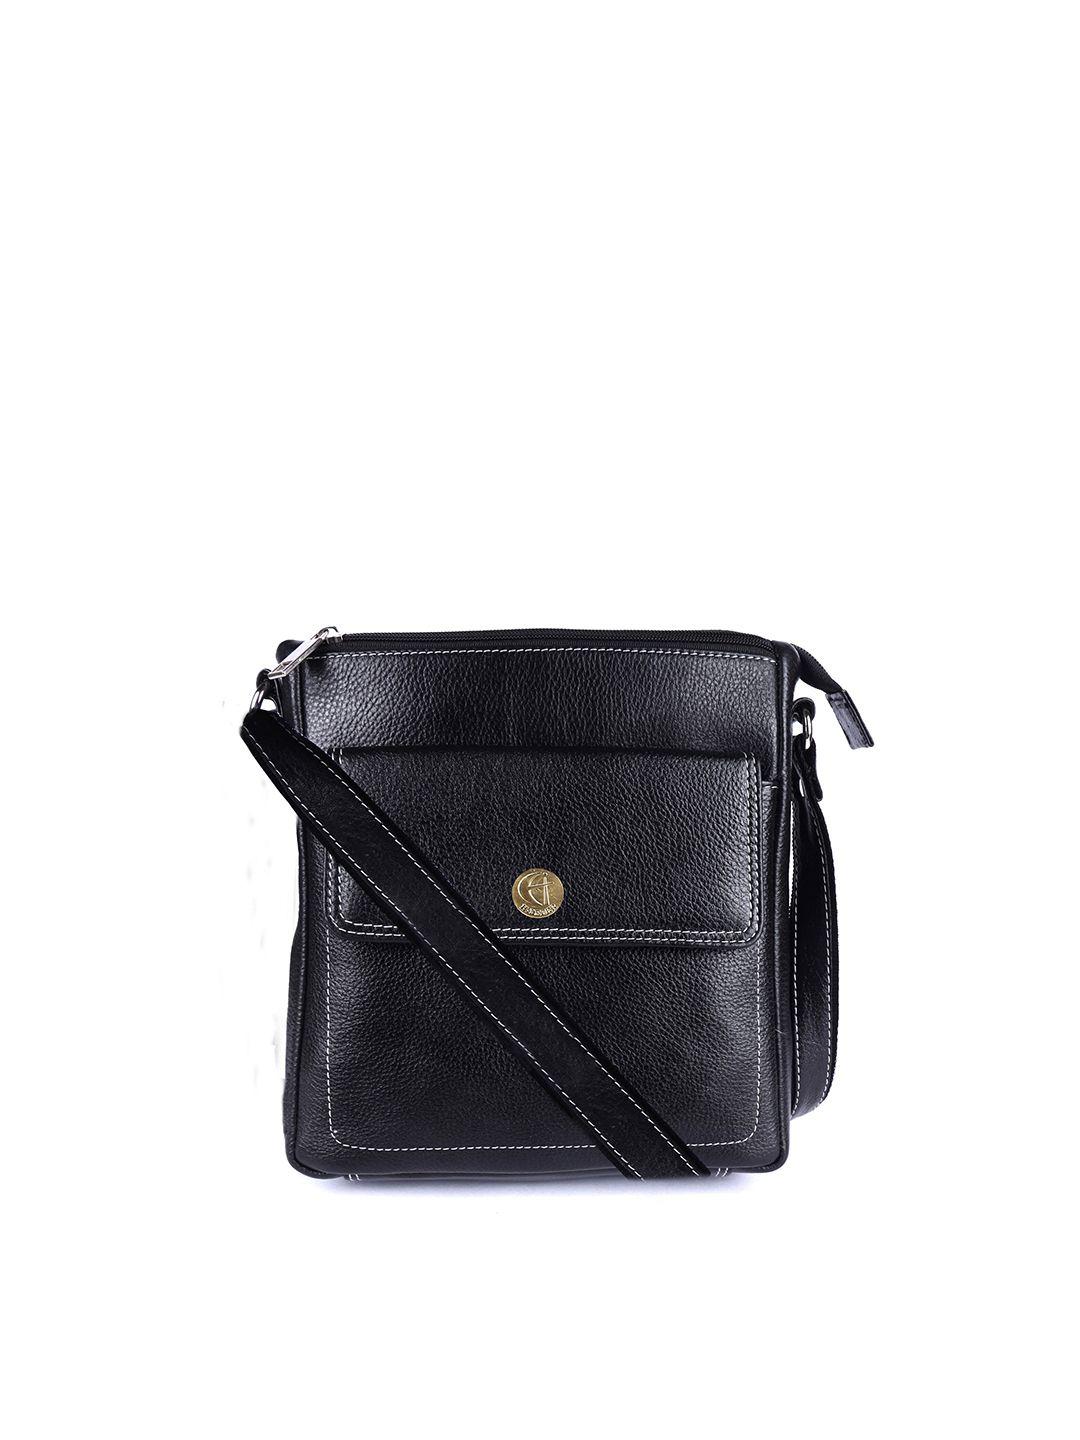 hileder unisex black textured messenger bag